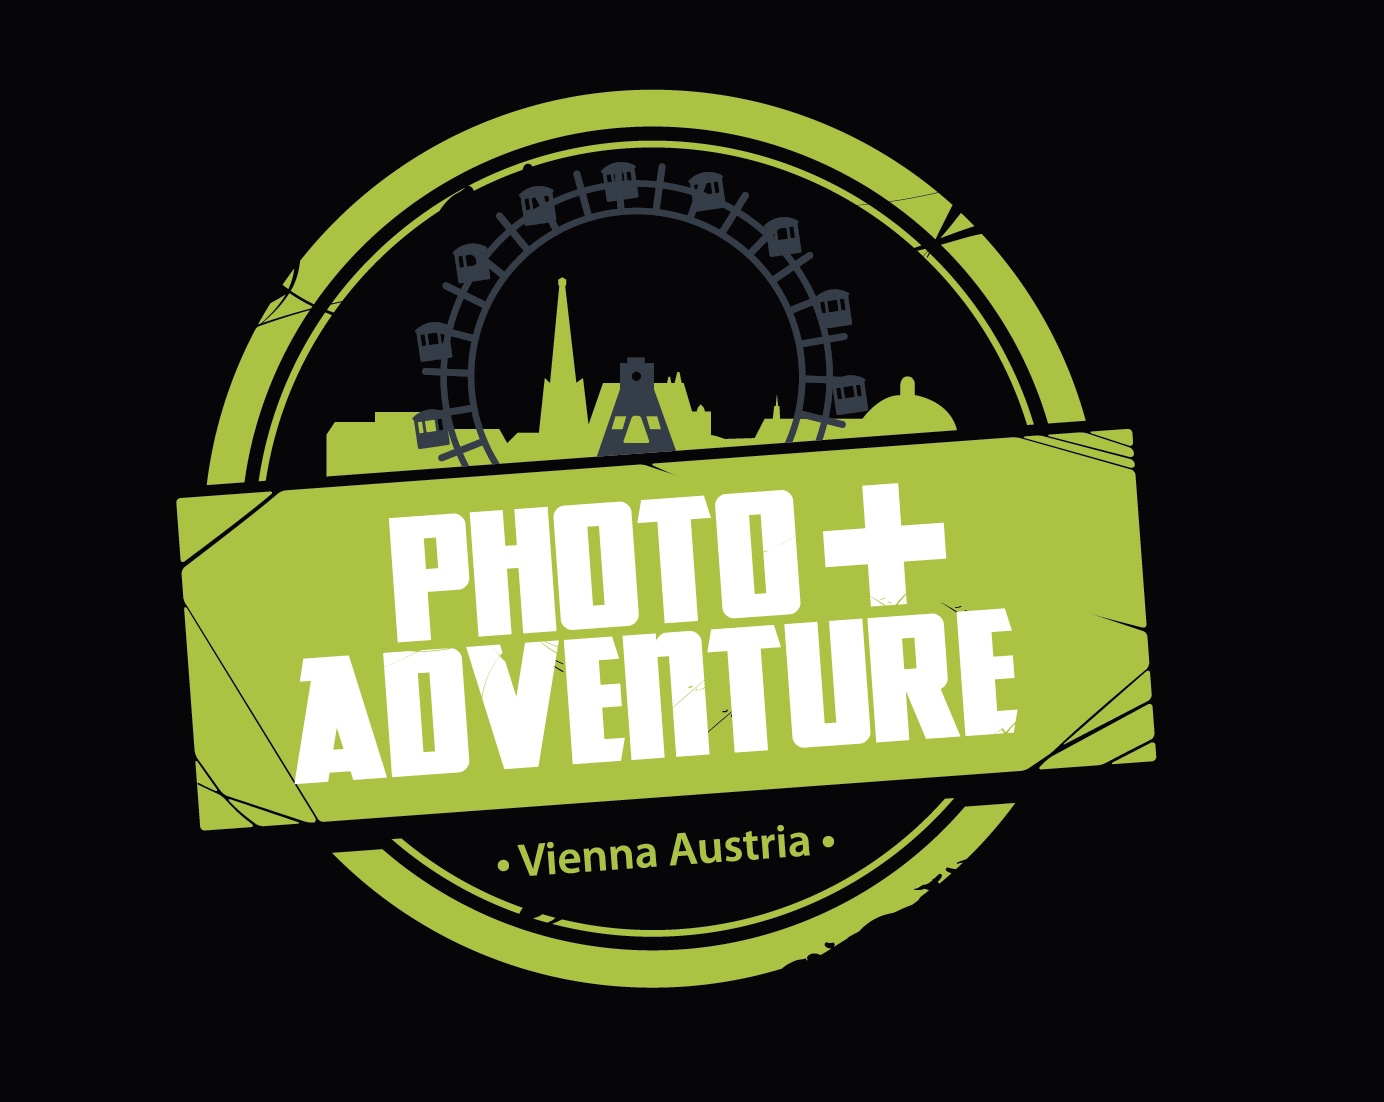 Die Photo+Adventure 2021 ist abgesagt. 2022 soll sie am 15./16.10. wieder stattfinden. (c) Photo+Adventure